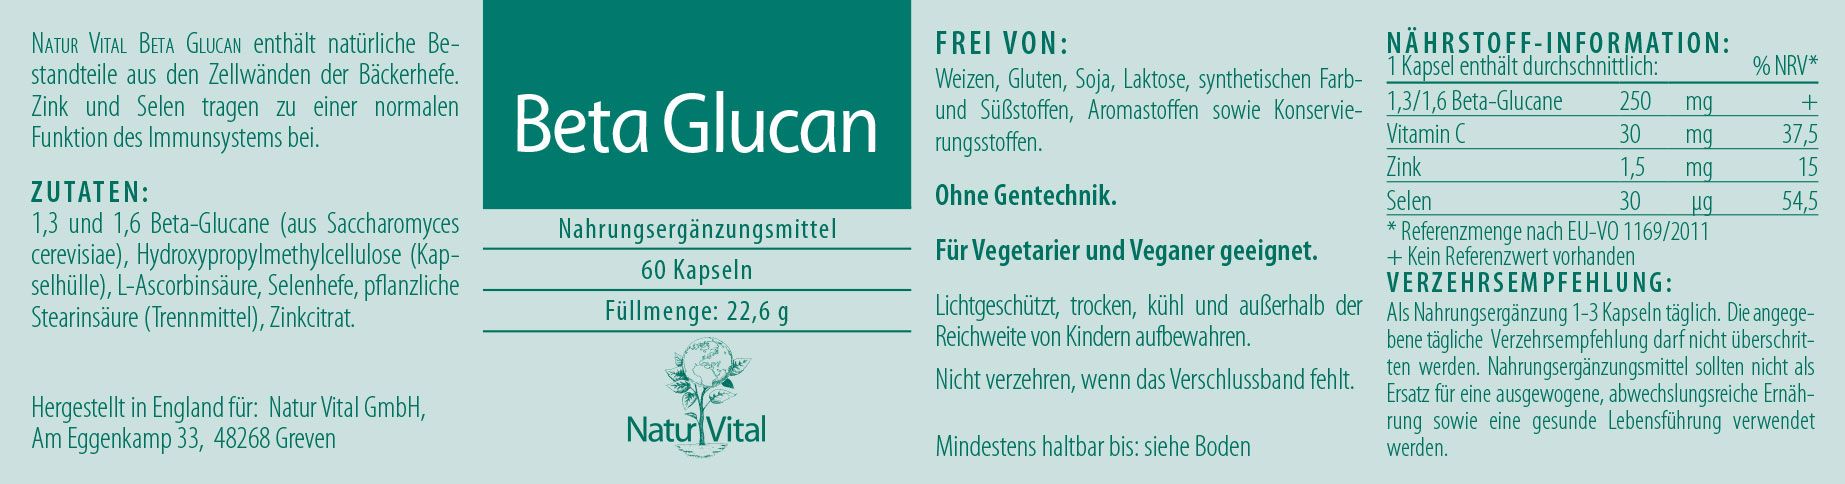 Etikett Beta Glucan von Natur Vital beinhaltet 60 Kapseln